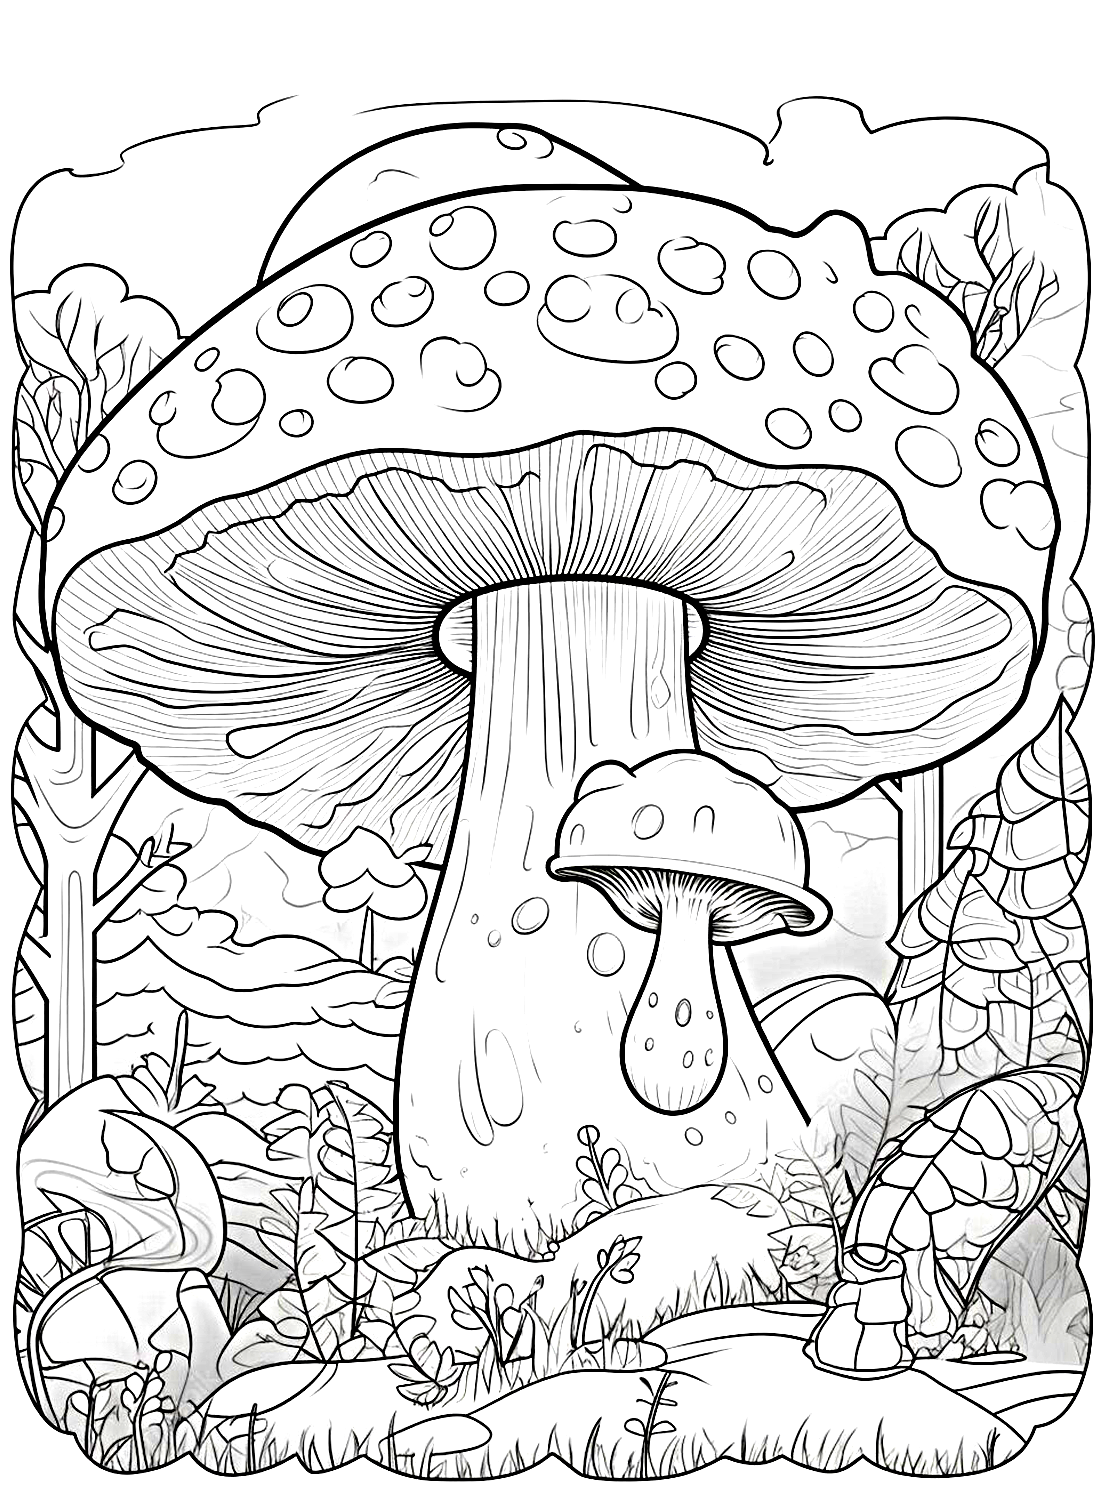 Een gigantische paddestoelfoto van Mushroom